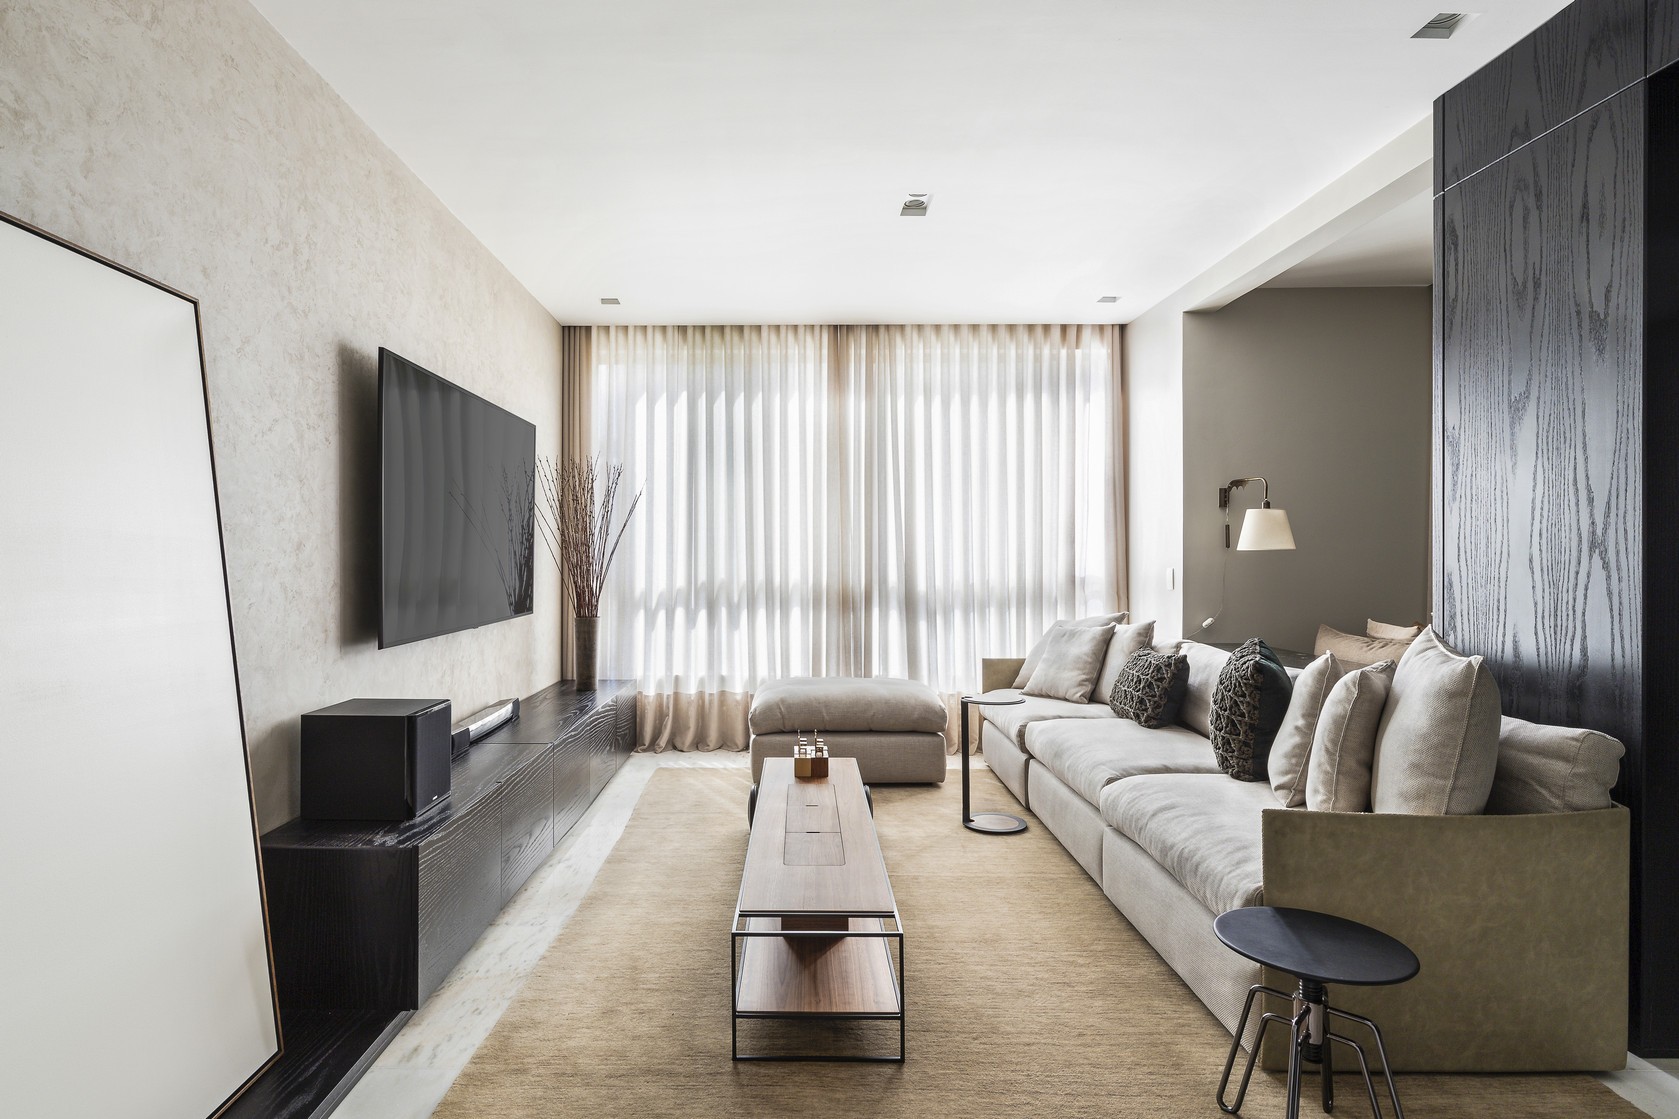 Décor do dia: sala de estar com estilo contemporâneo e paleta neutra (Foto: Ivan Araújo)